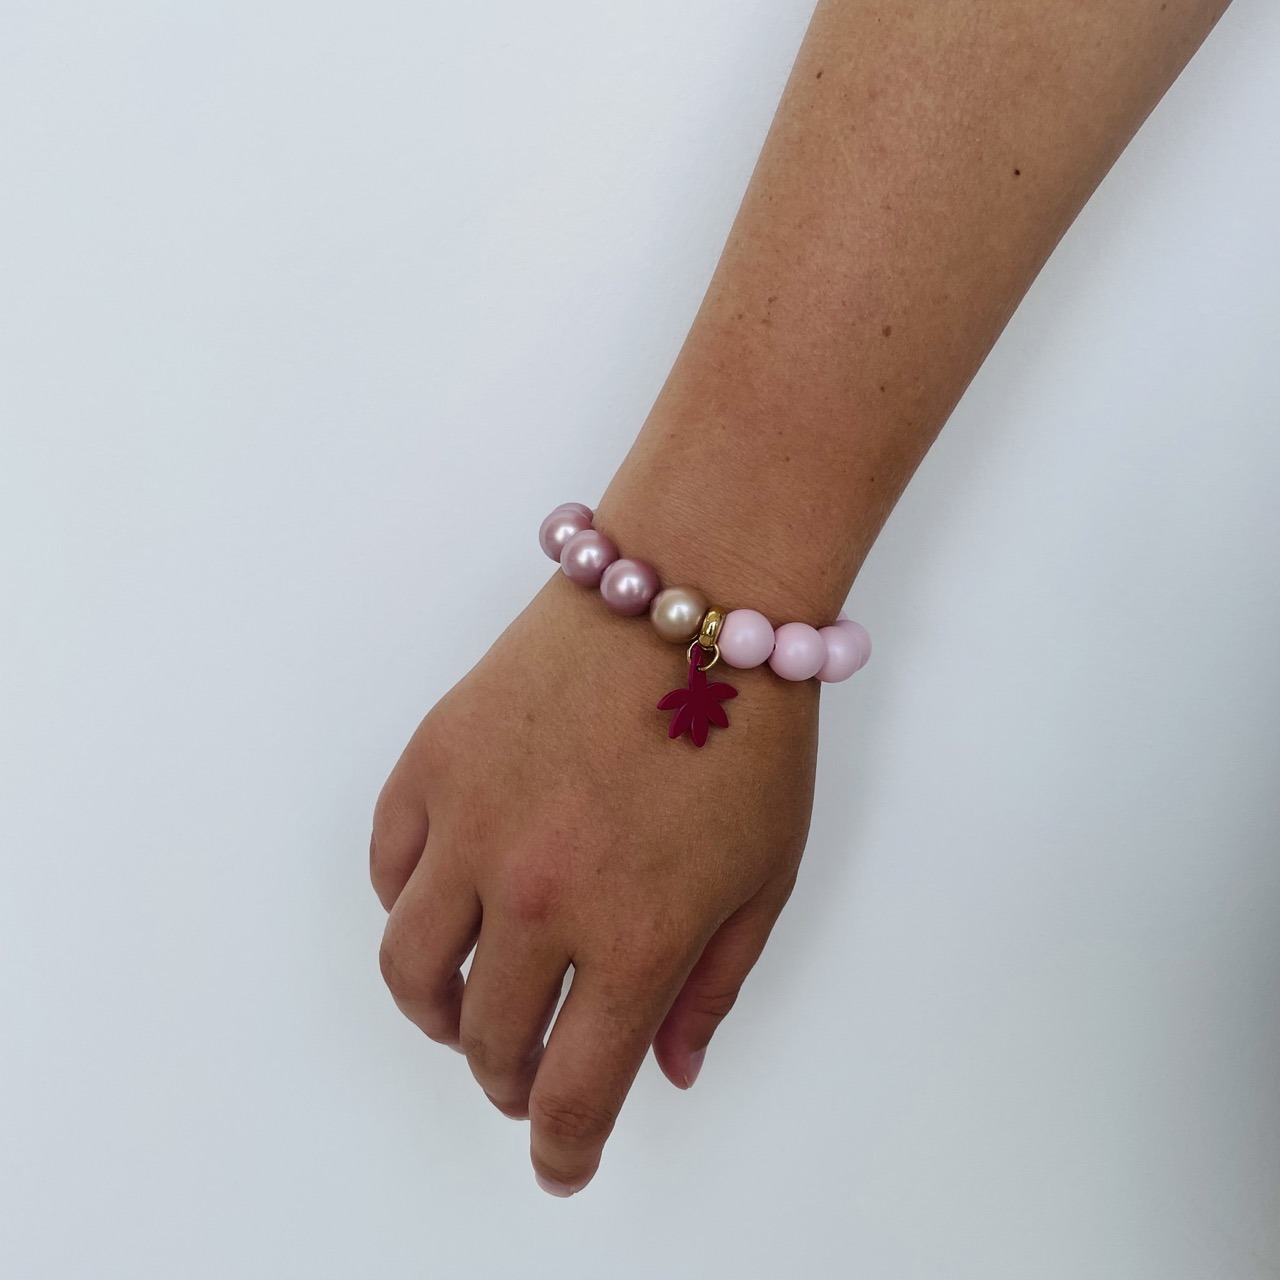 Bracelet soft pink pearls